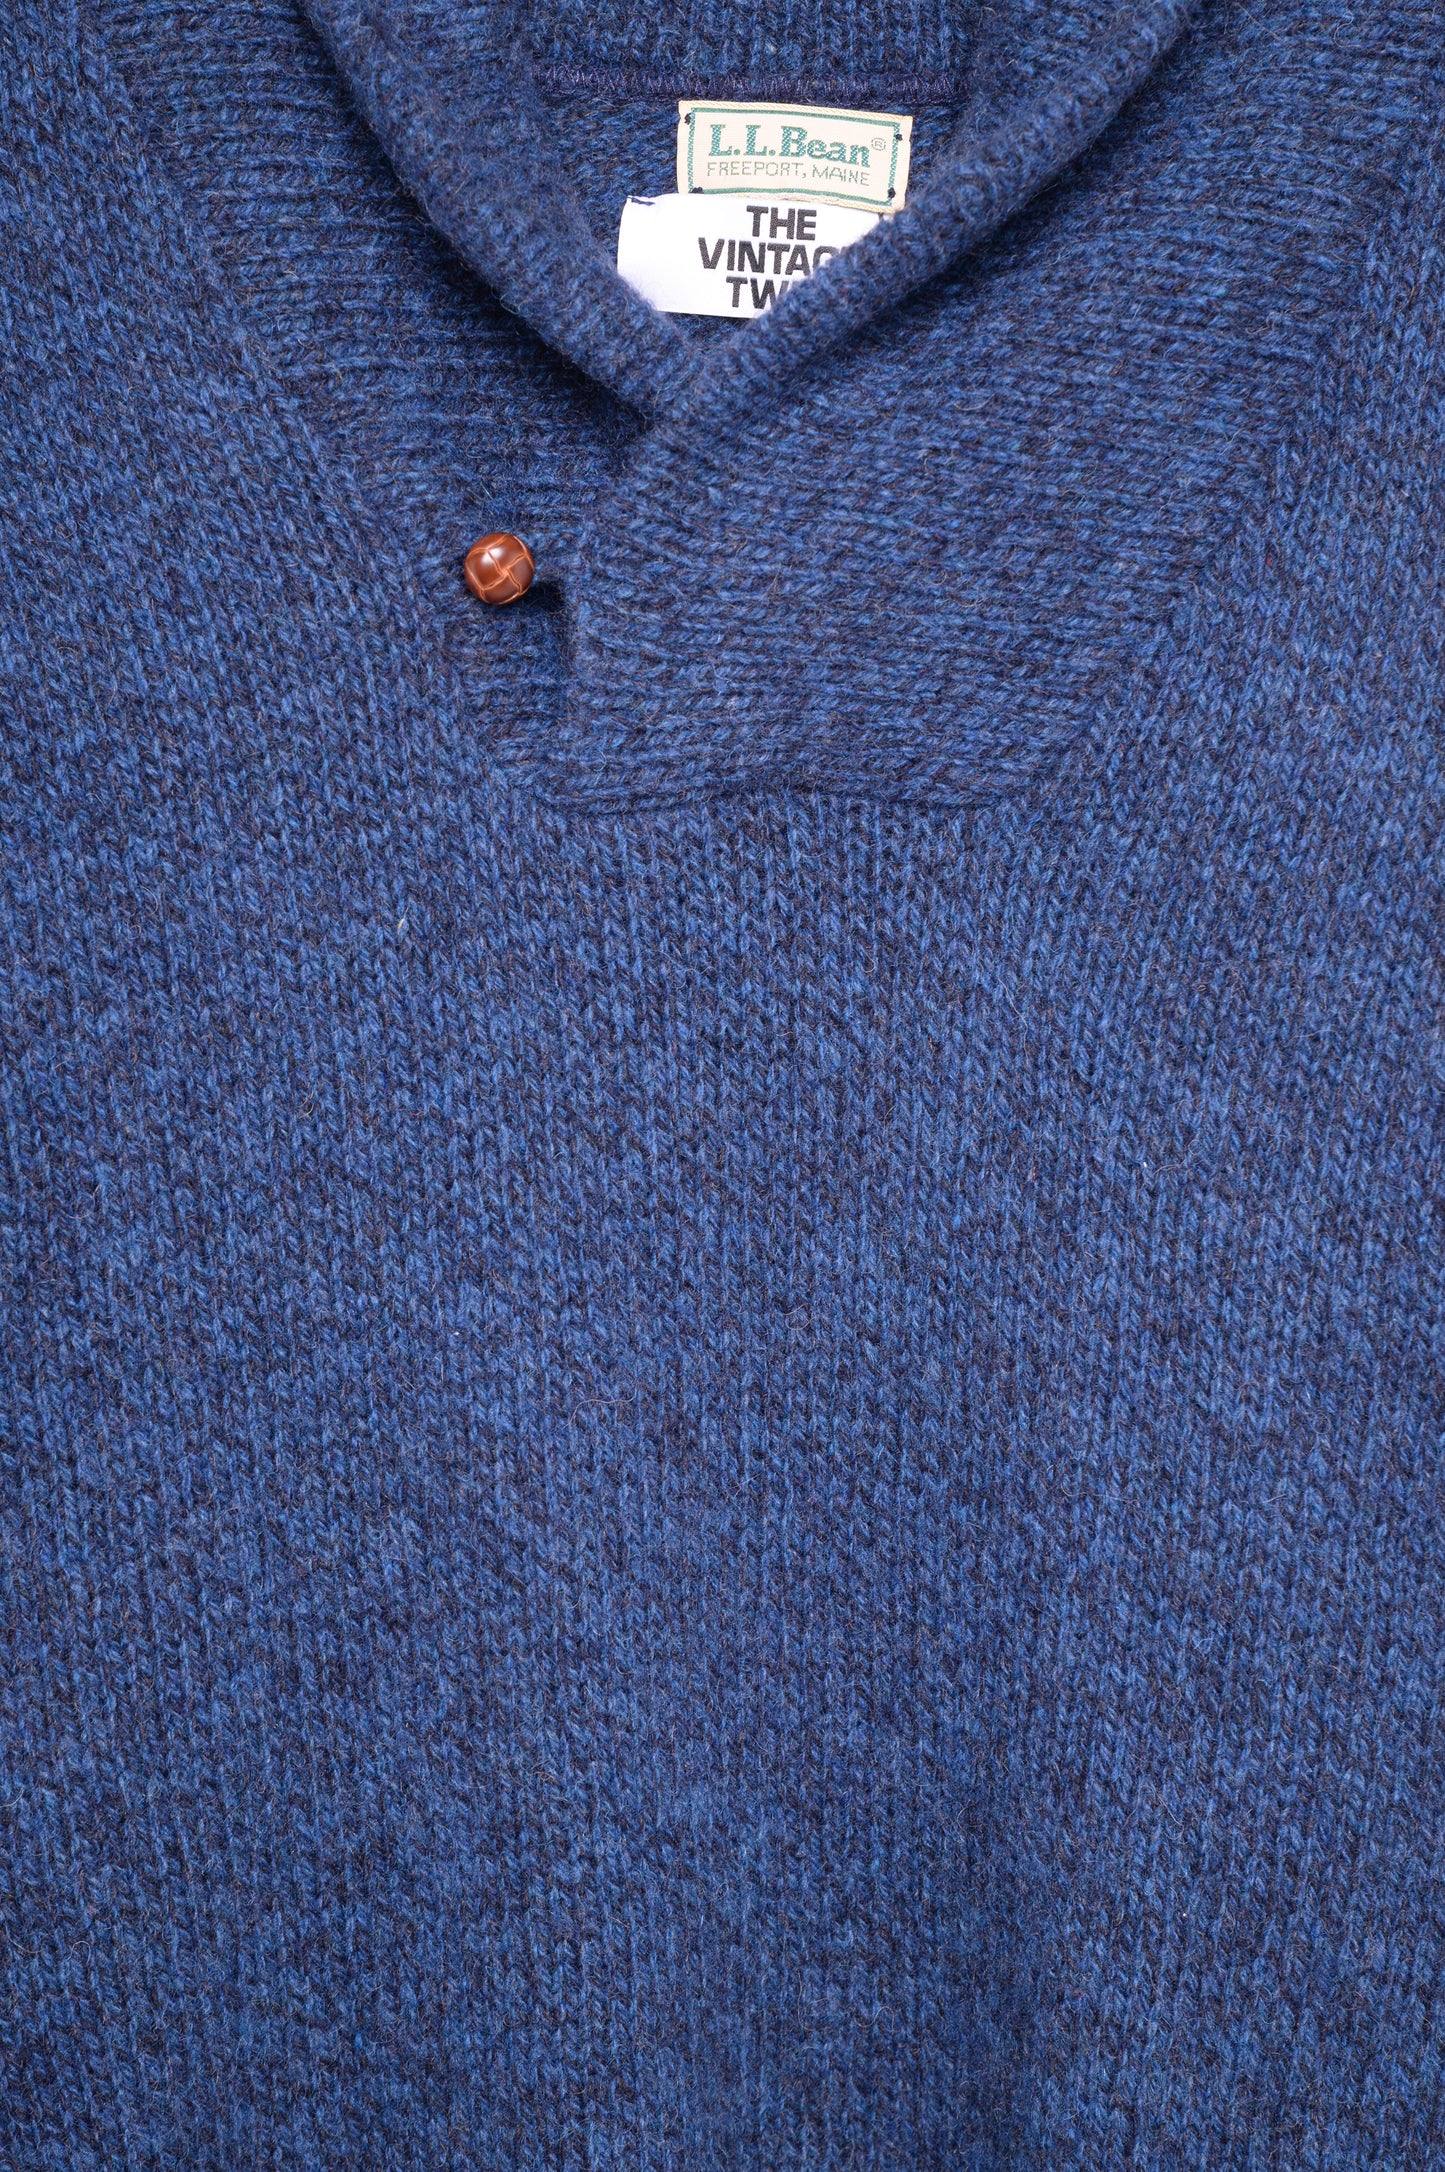 L.L. Bean Marled Wool Sweater USA